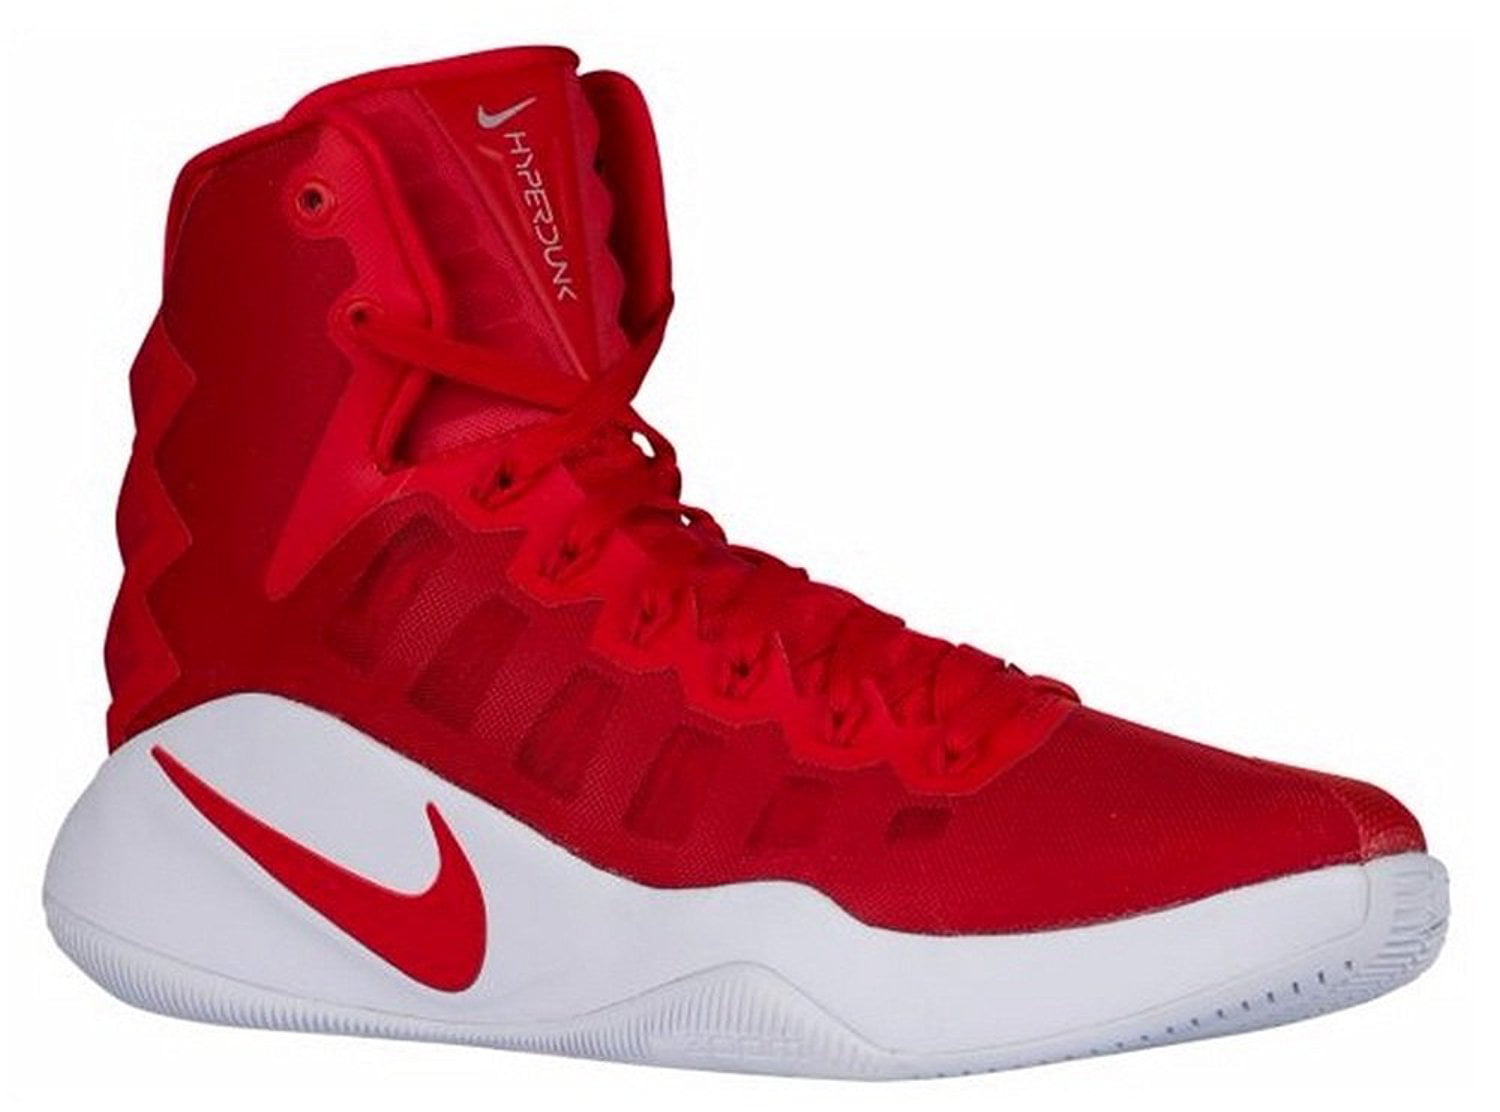 Mens Hyperdunk TB Basketball Shoes Red 844368 Size 14 - Walmart.com